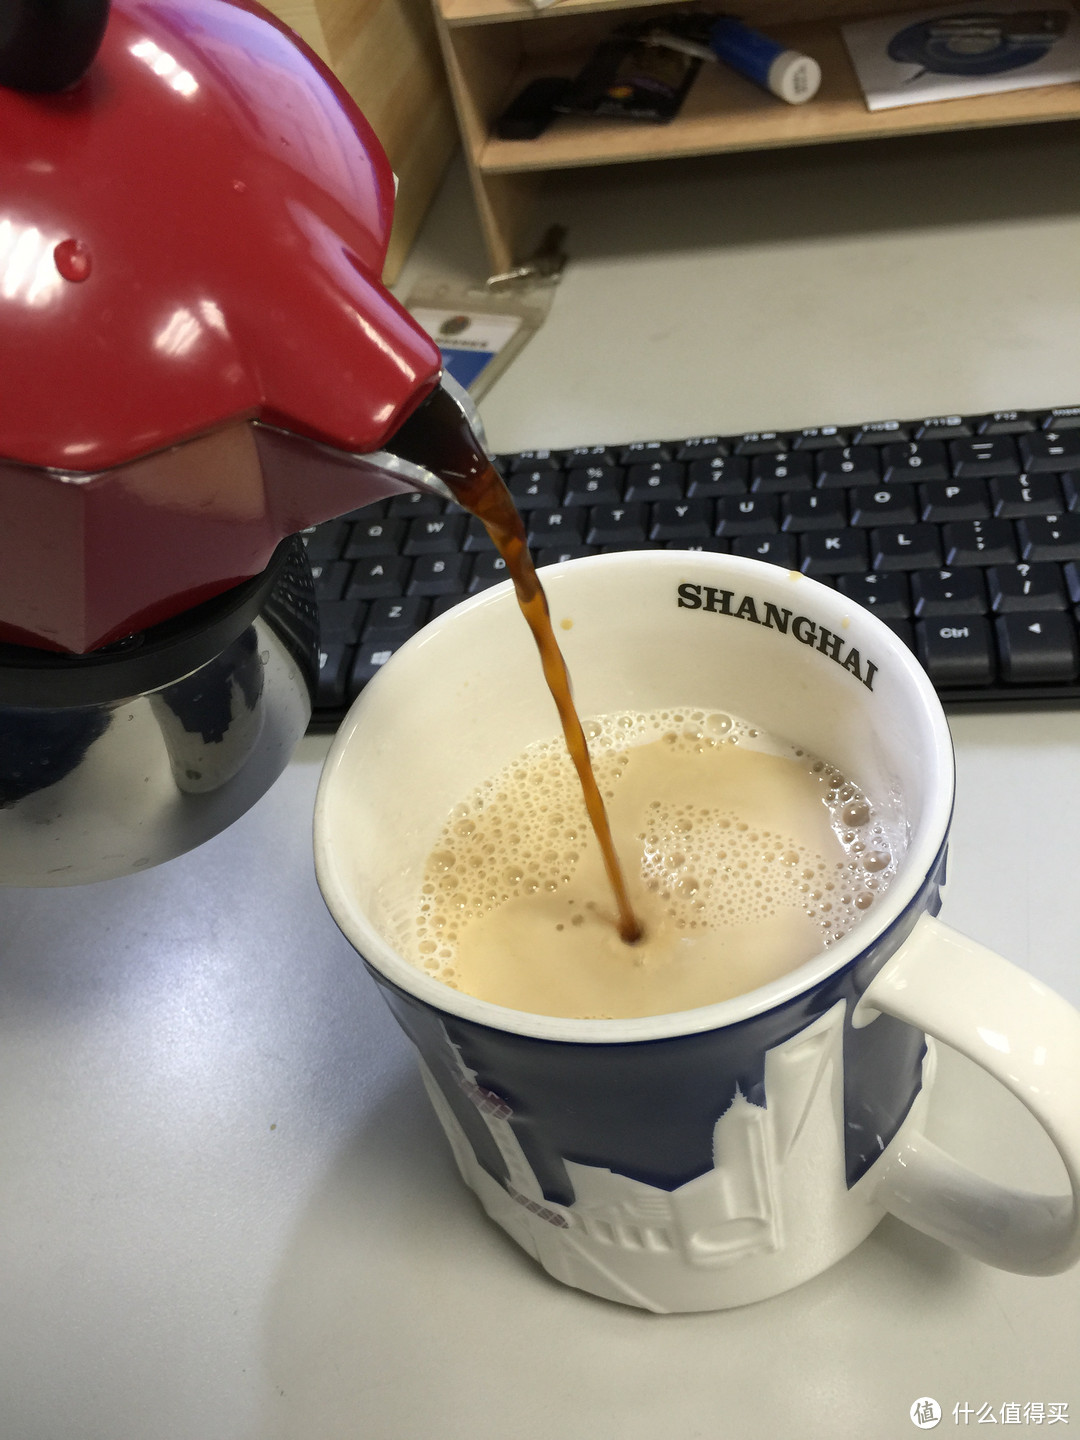 一个伪咖啡爱好者的Bialetti moka induction全热源摩卡壶 使用初体验